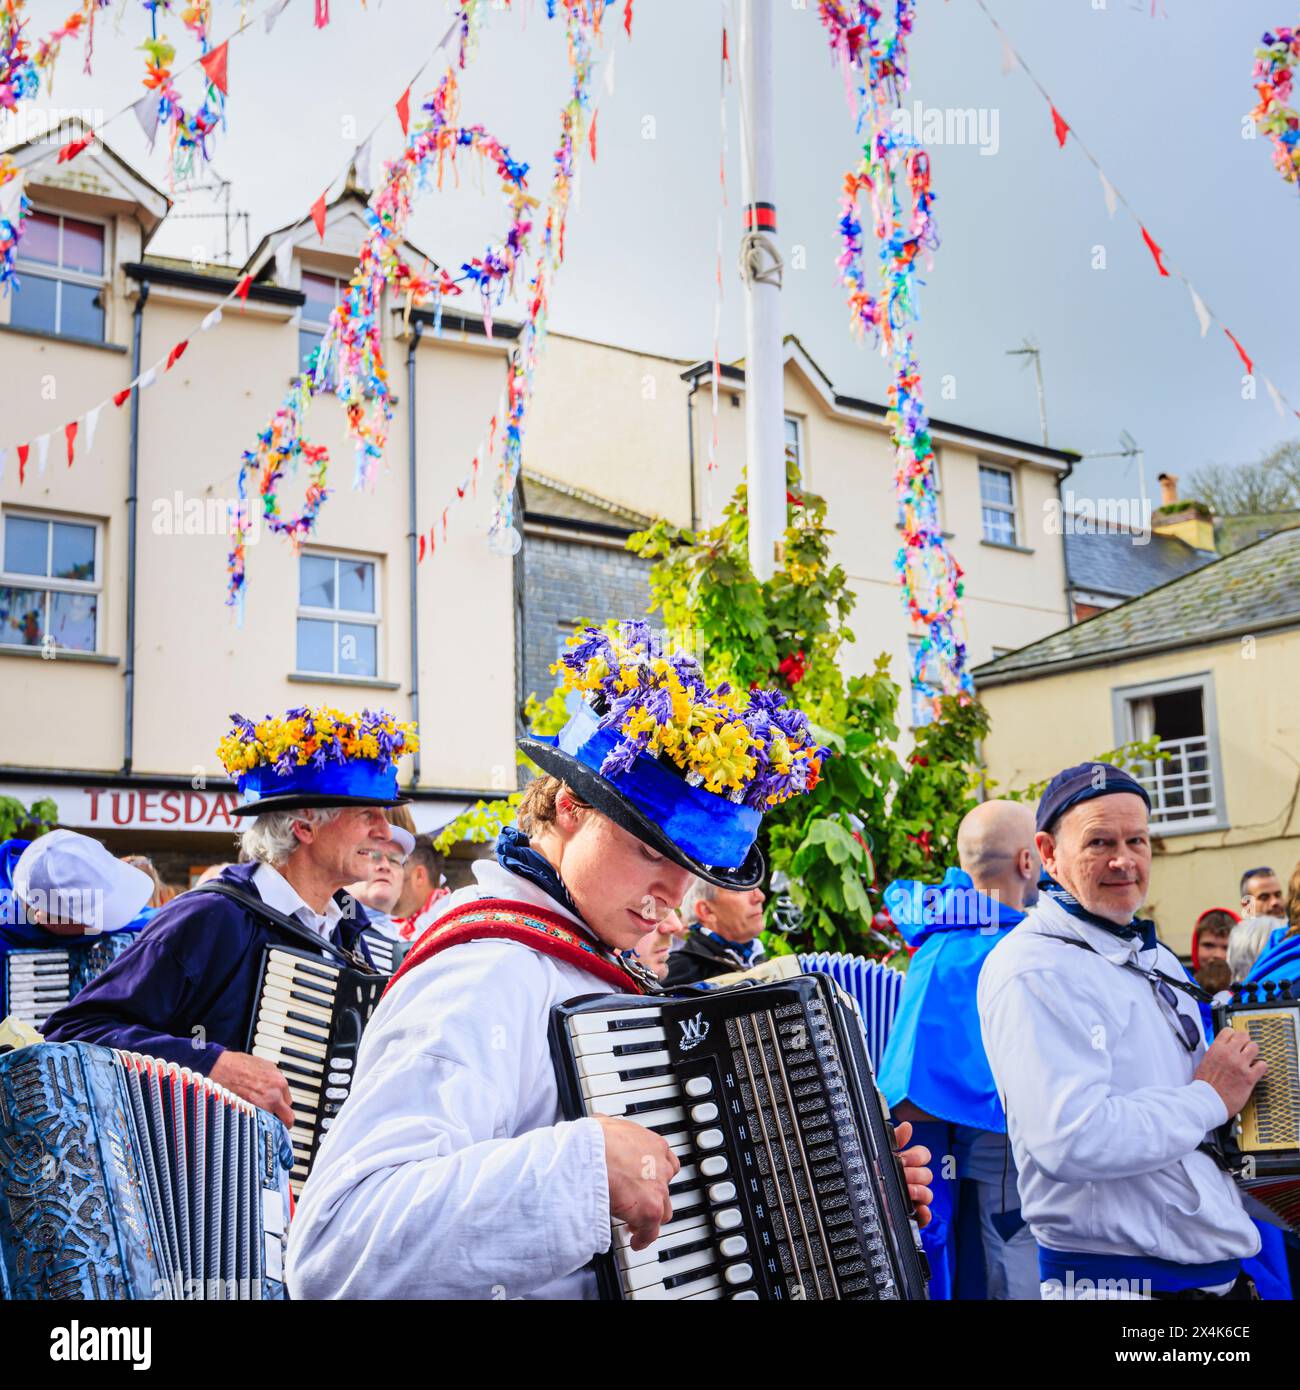 Un joueur d'accordéon Blue Ribbon porte un chapeau avec des cloches bleues et des cowslips pour le festival 'Obby 'Oss', un événement folklorique annuel le jour de mai à Padstow, Cornouailles Banque D'Images